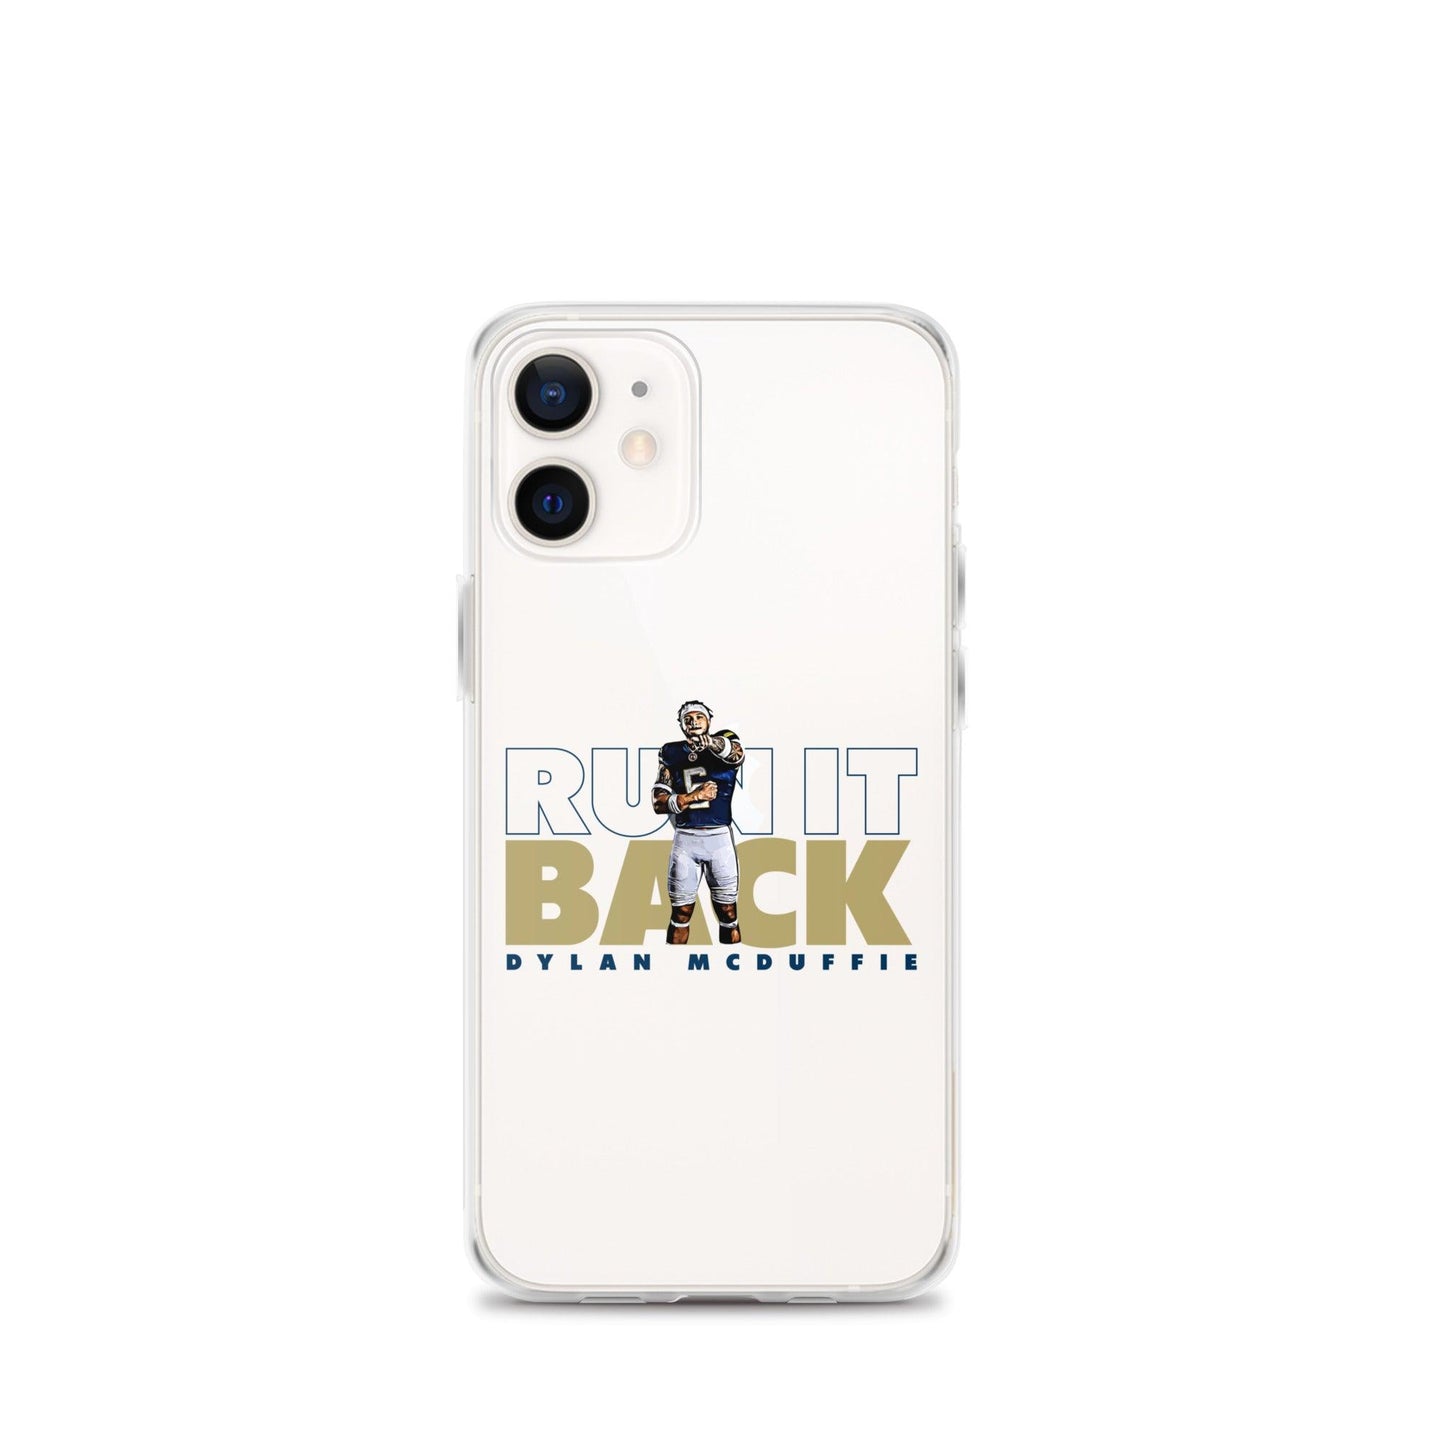 Dylan McDuffie "Run It Back" iPhone Case - Fan Arch